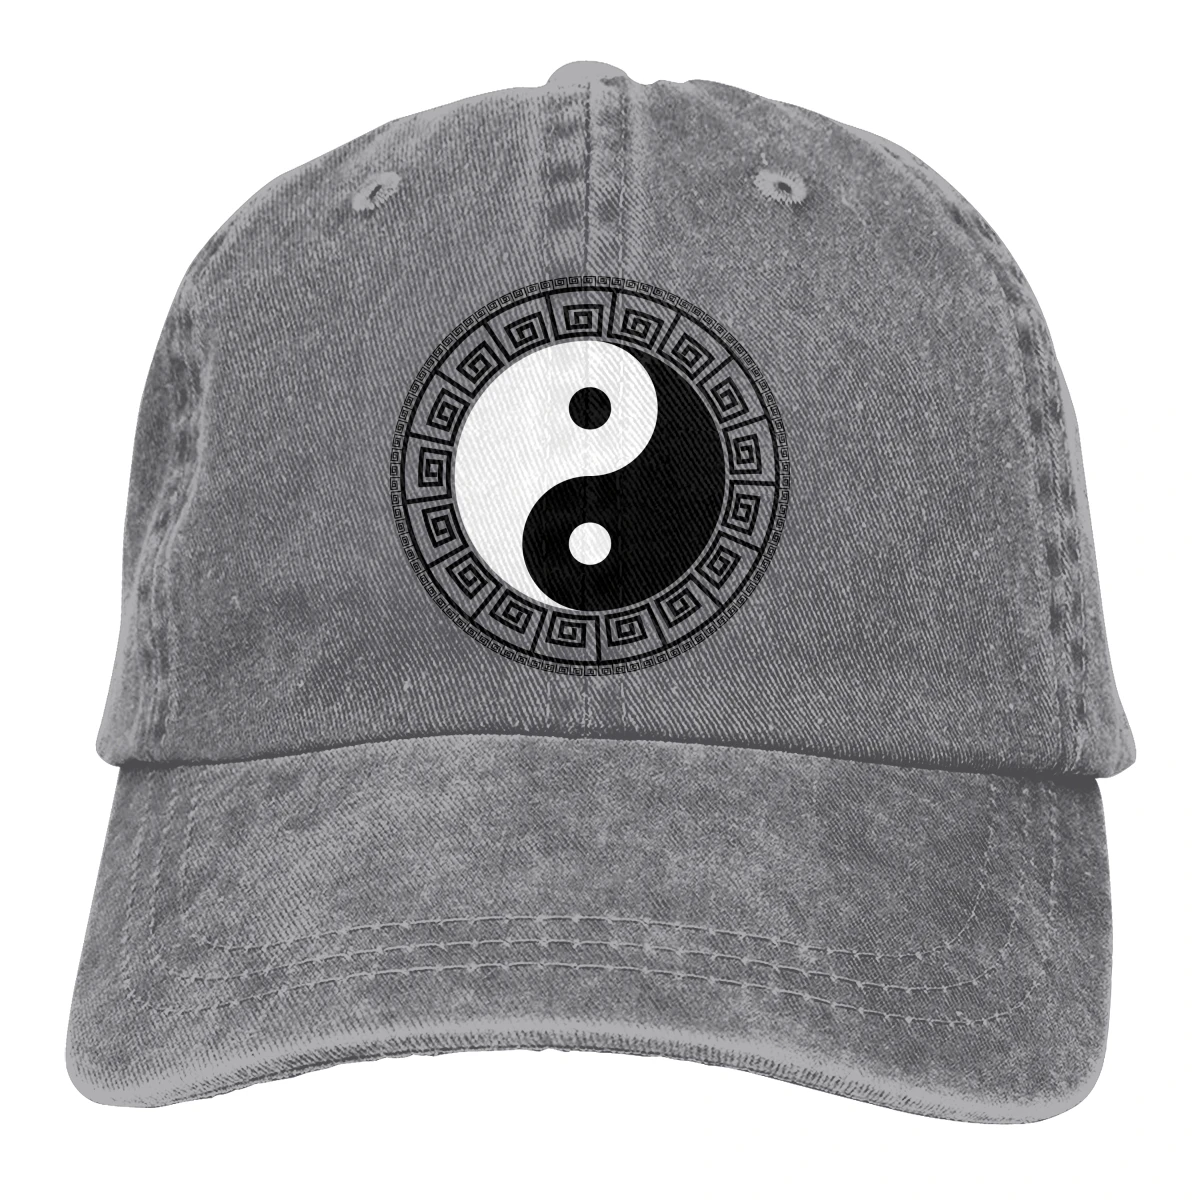 Yin Yang  Asian Retro cotton Washed Baseball Cap Cowboy Hat Fitted Cap Snapback Hat for Men Women Casual Cap Sun Hat Outdoor Cap